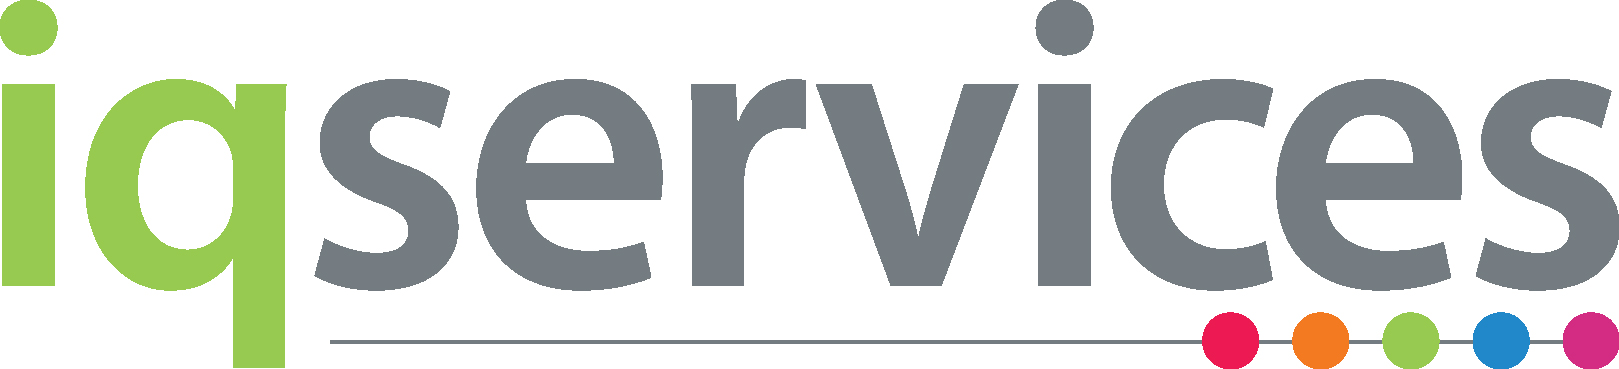 NEW_IQ_Services_Logo